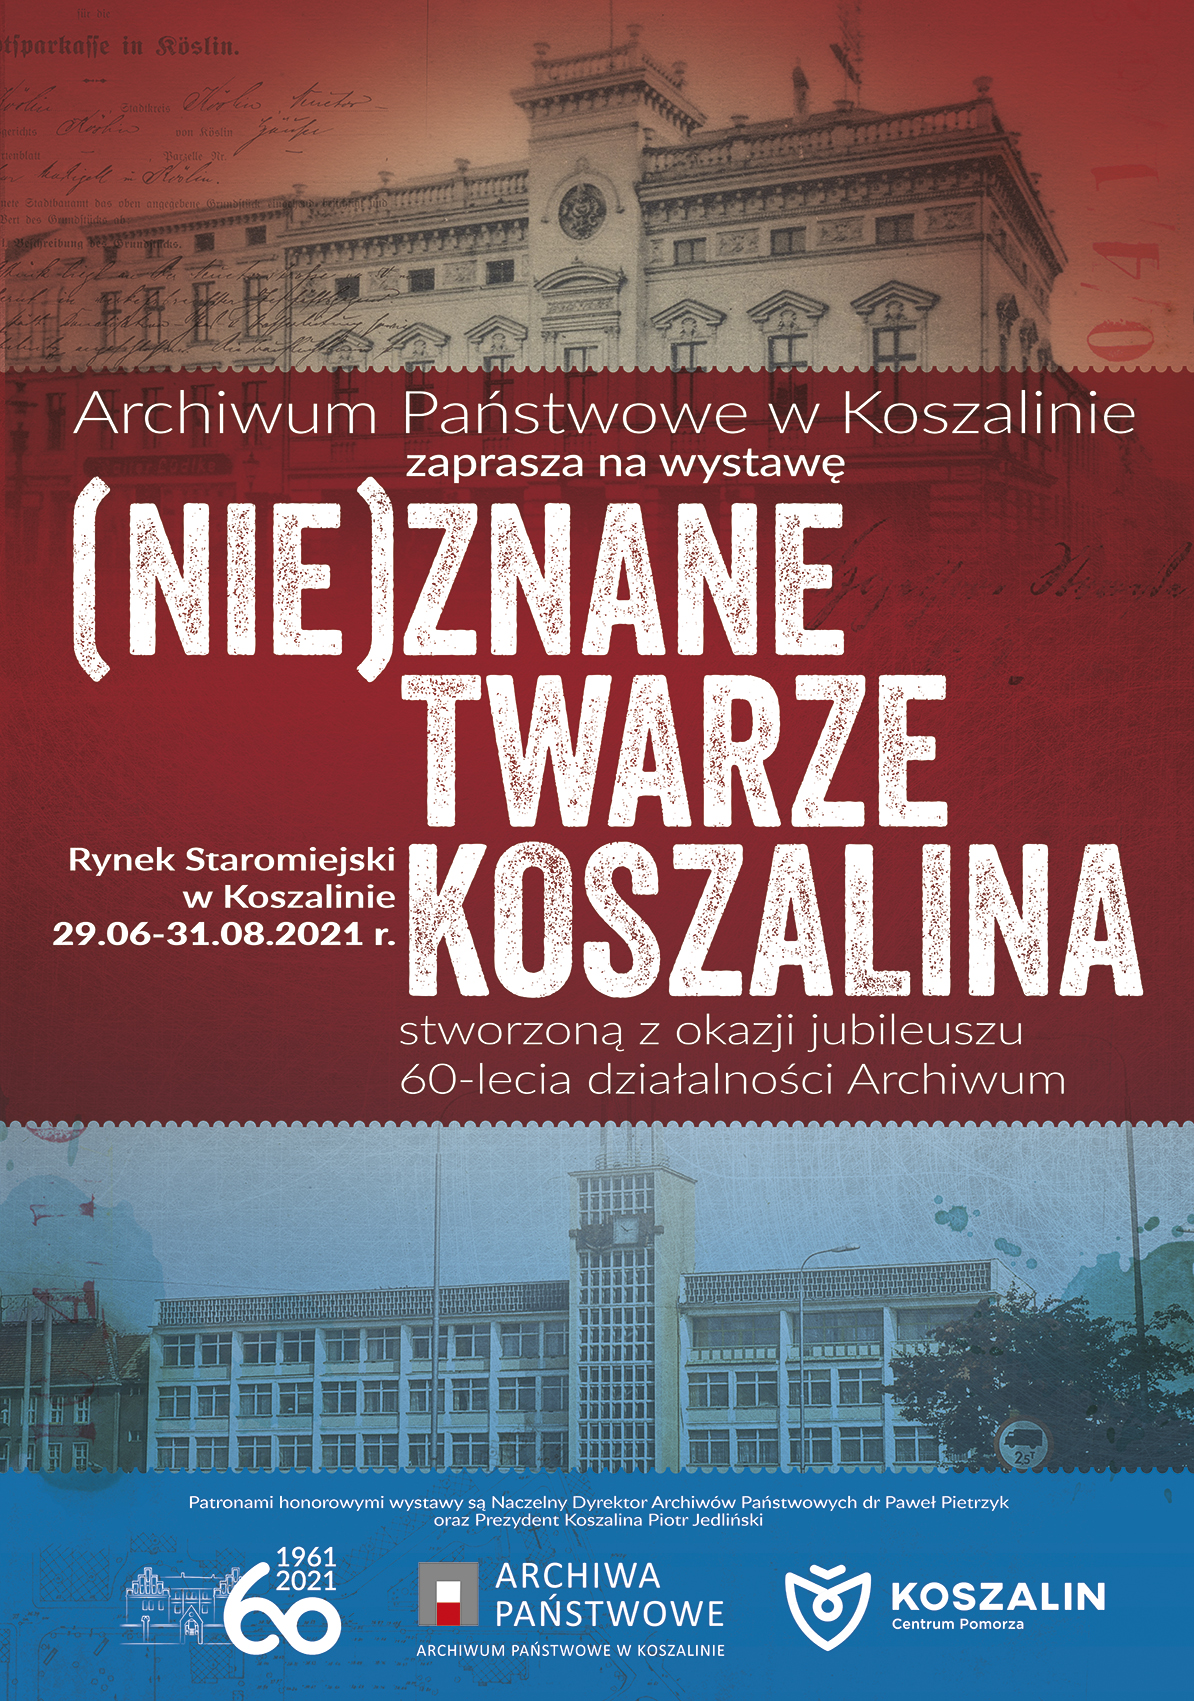 Plakat promujący wystawę ze zdjęciami budynków w Koszalinie